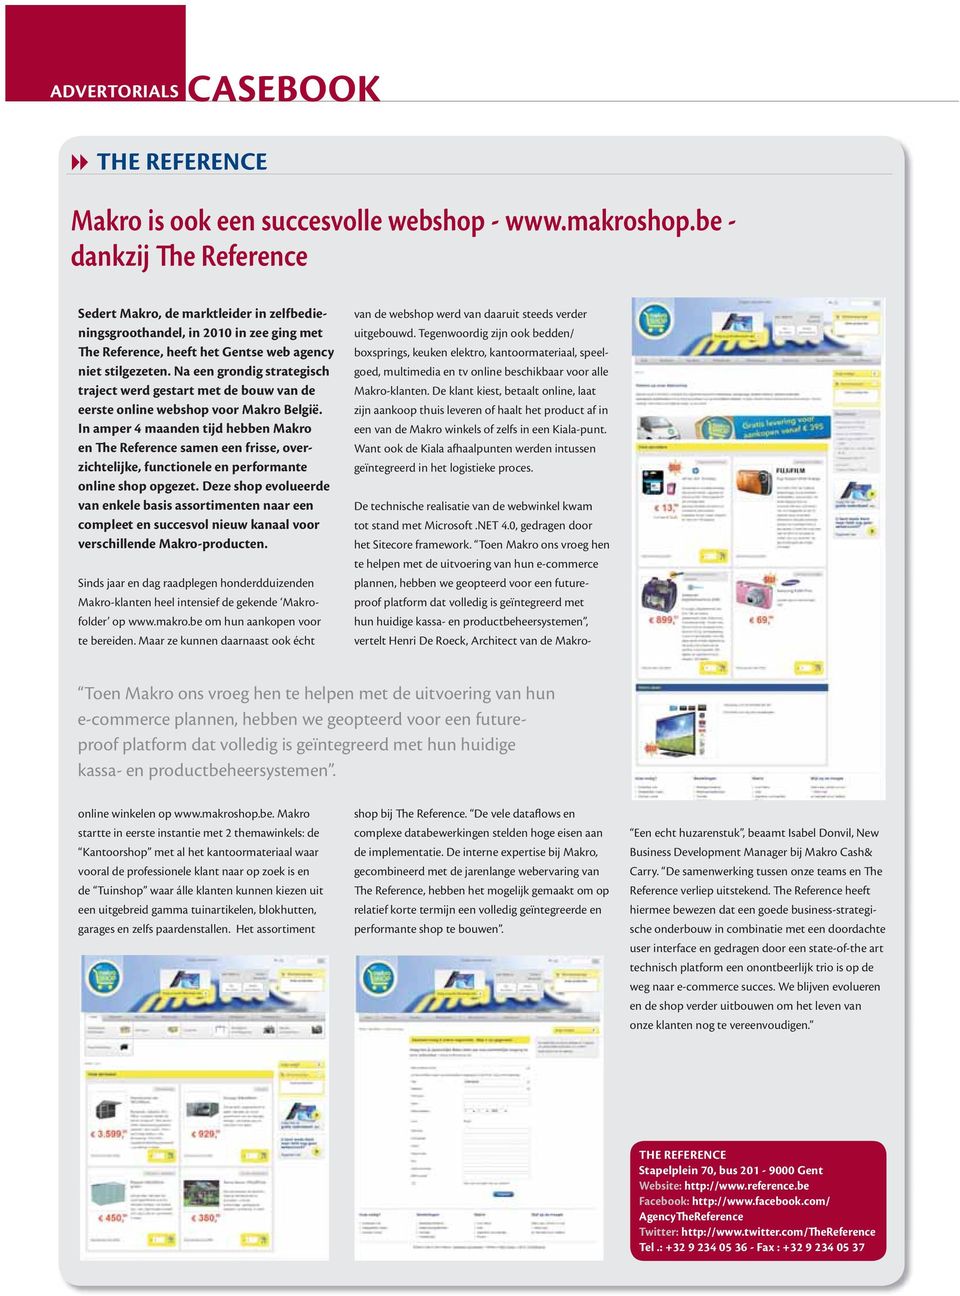 Na een grondig strategisch traject werd gestart met de bouw van de eerste online webshop voor Makro België.